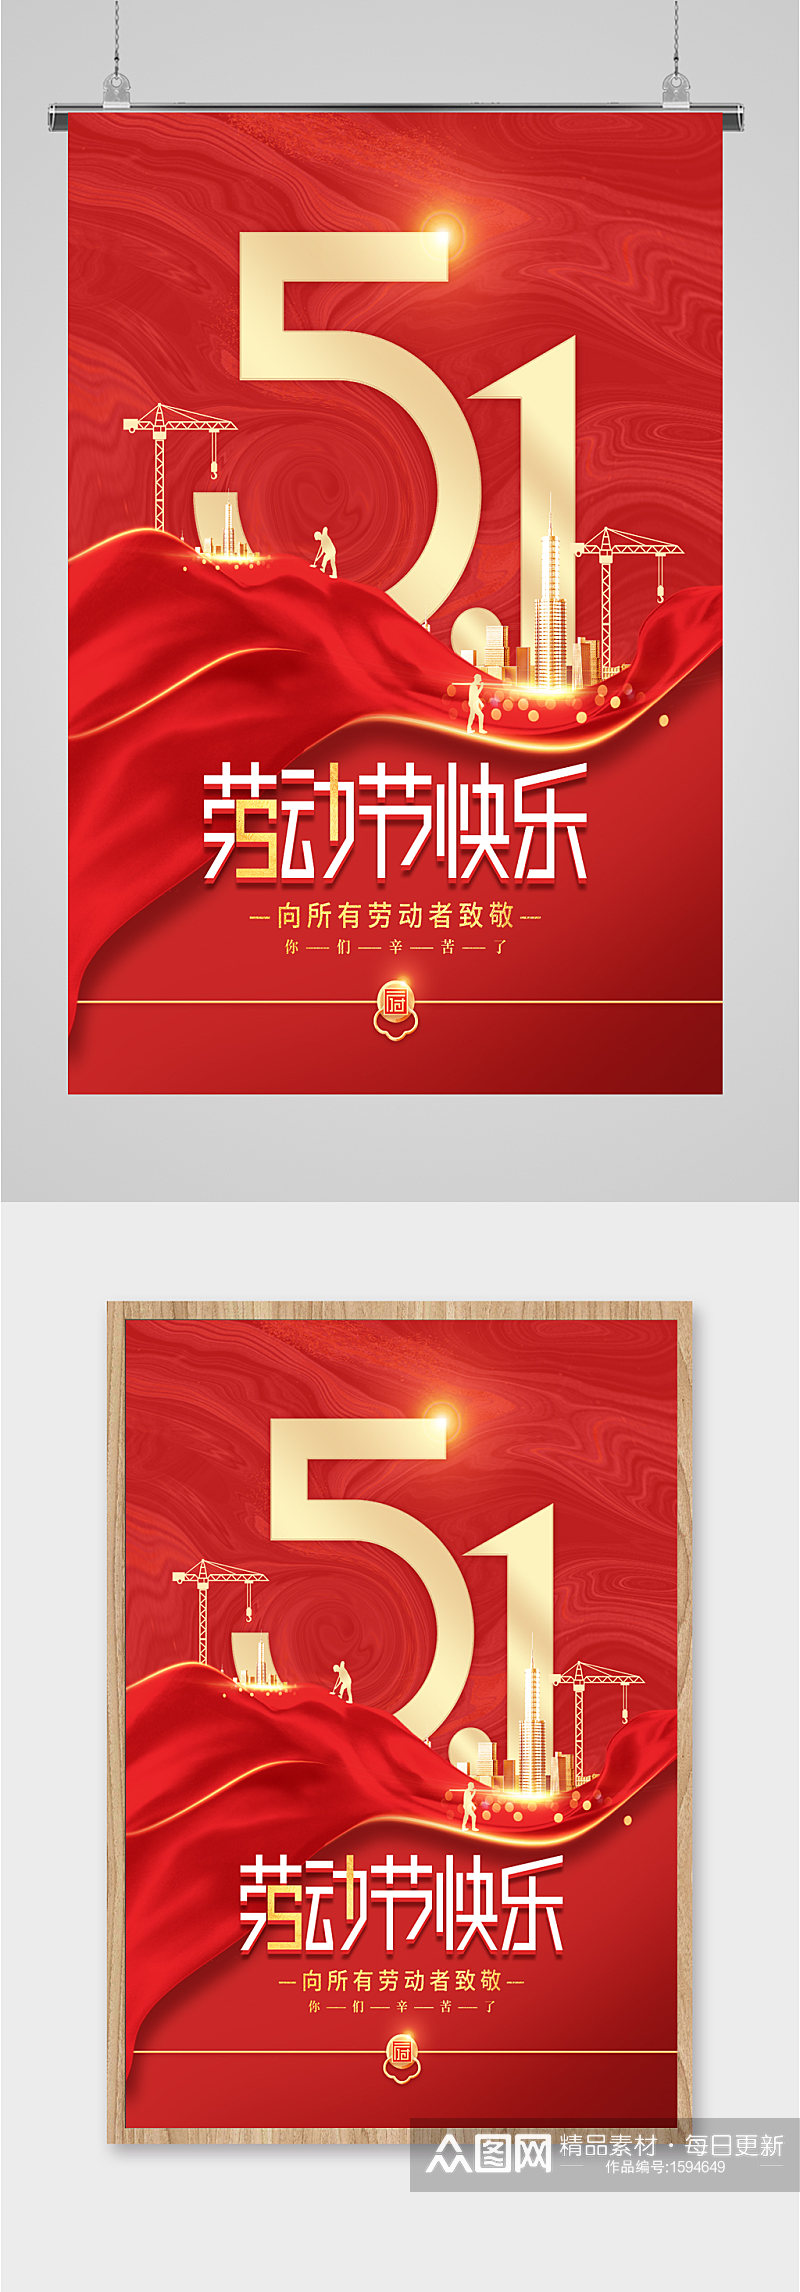 51劳动节快乐中国风海报素材